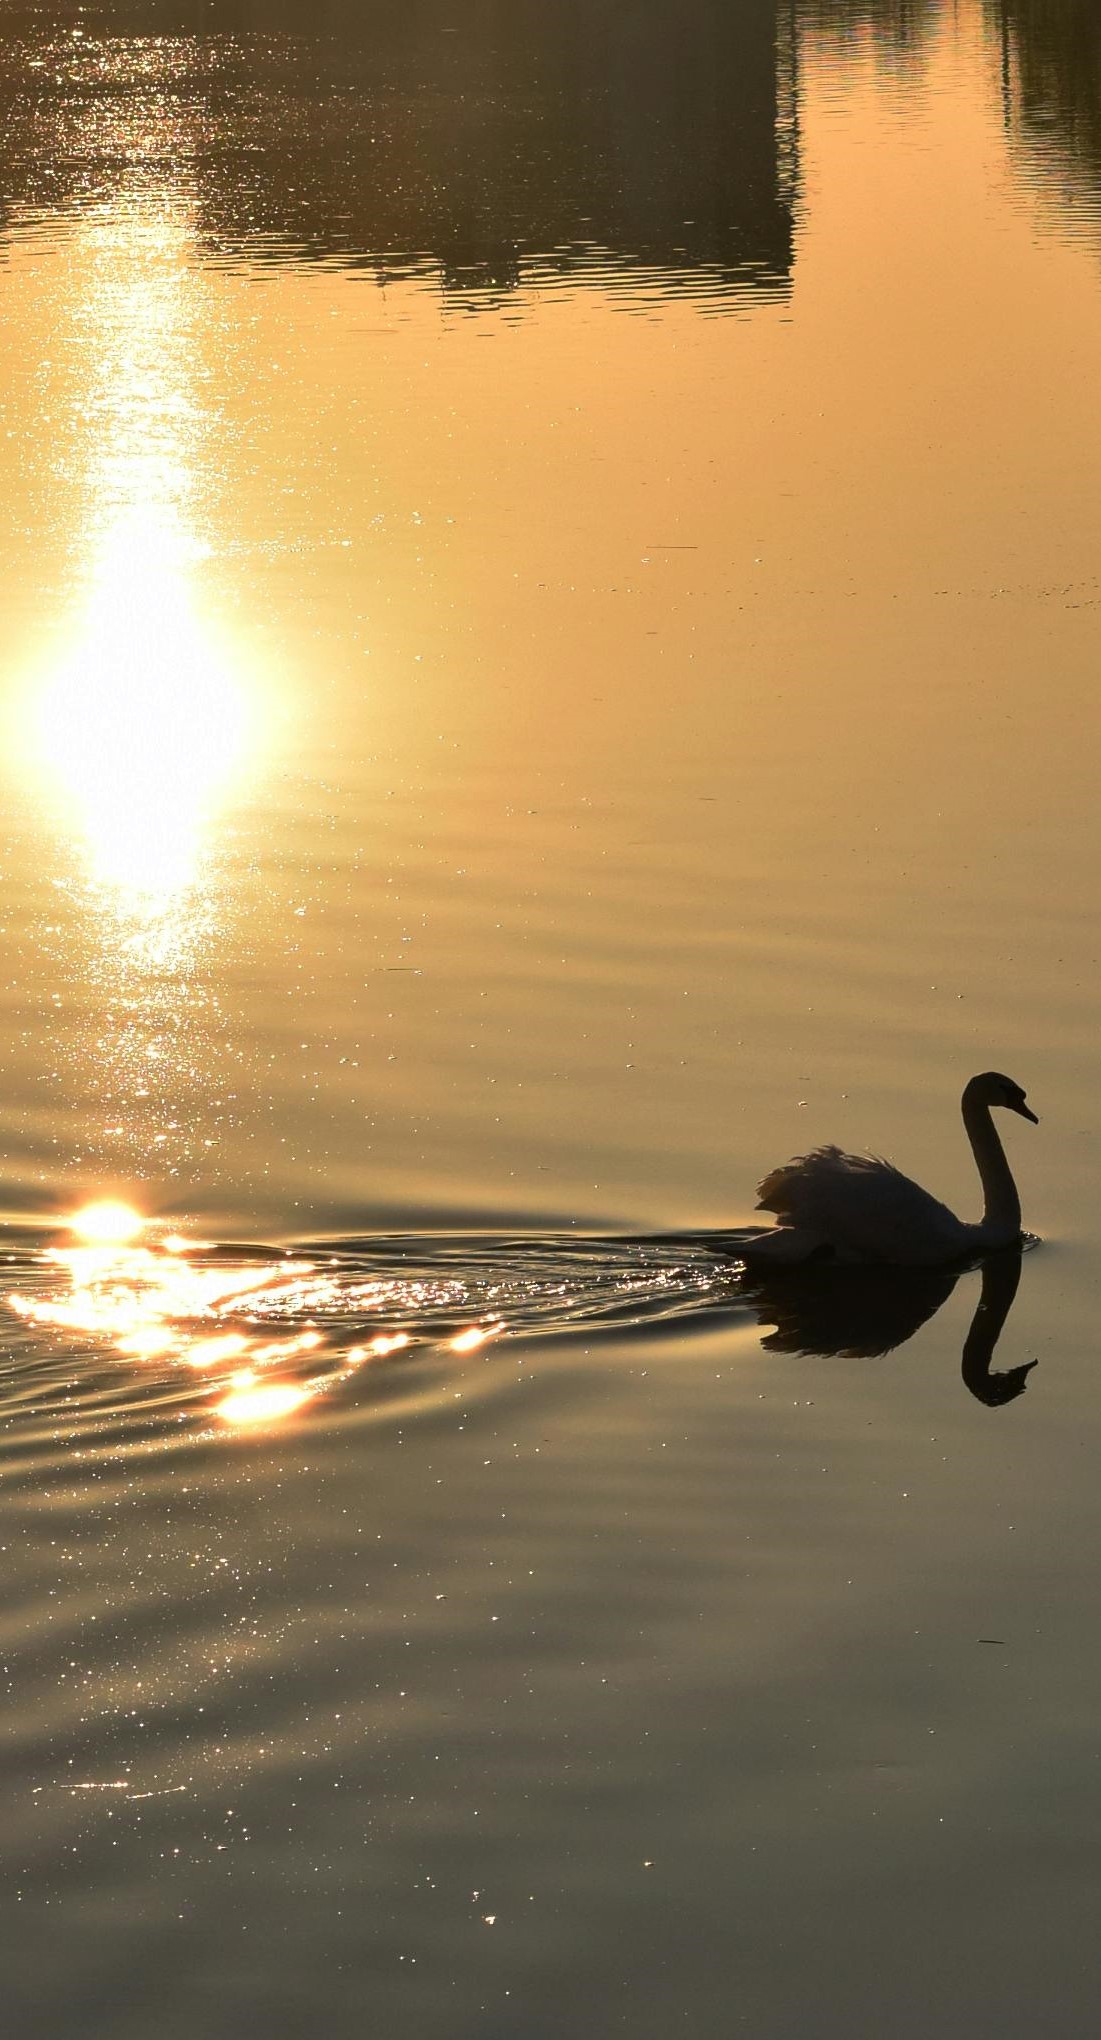 Swan sun reflection.